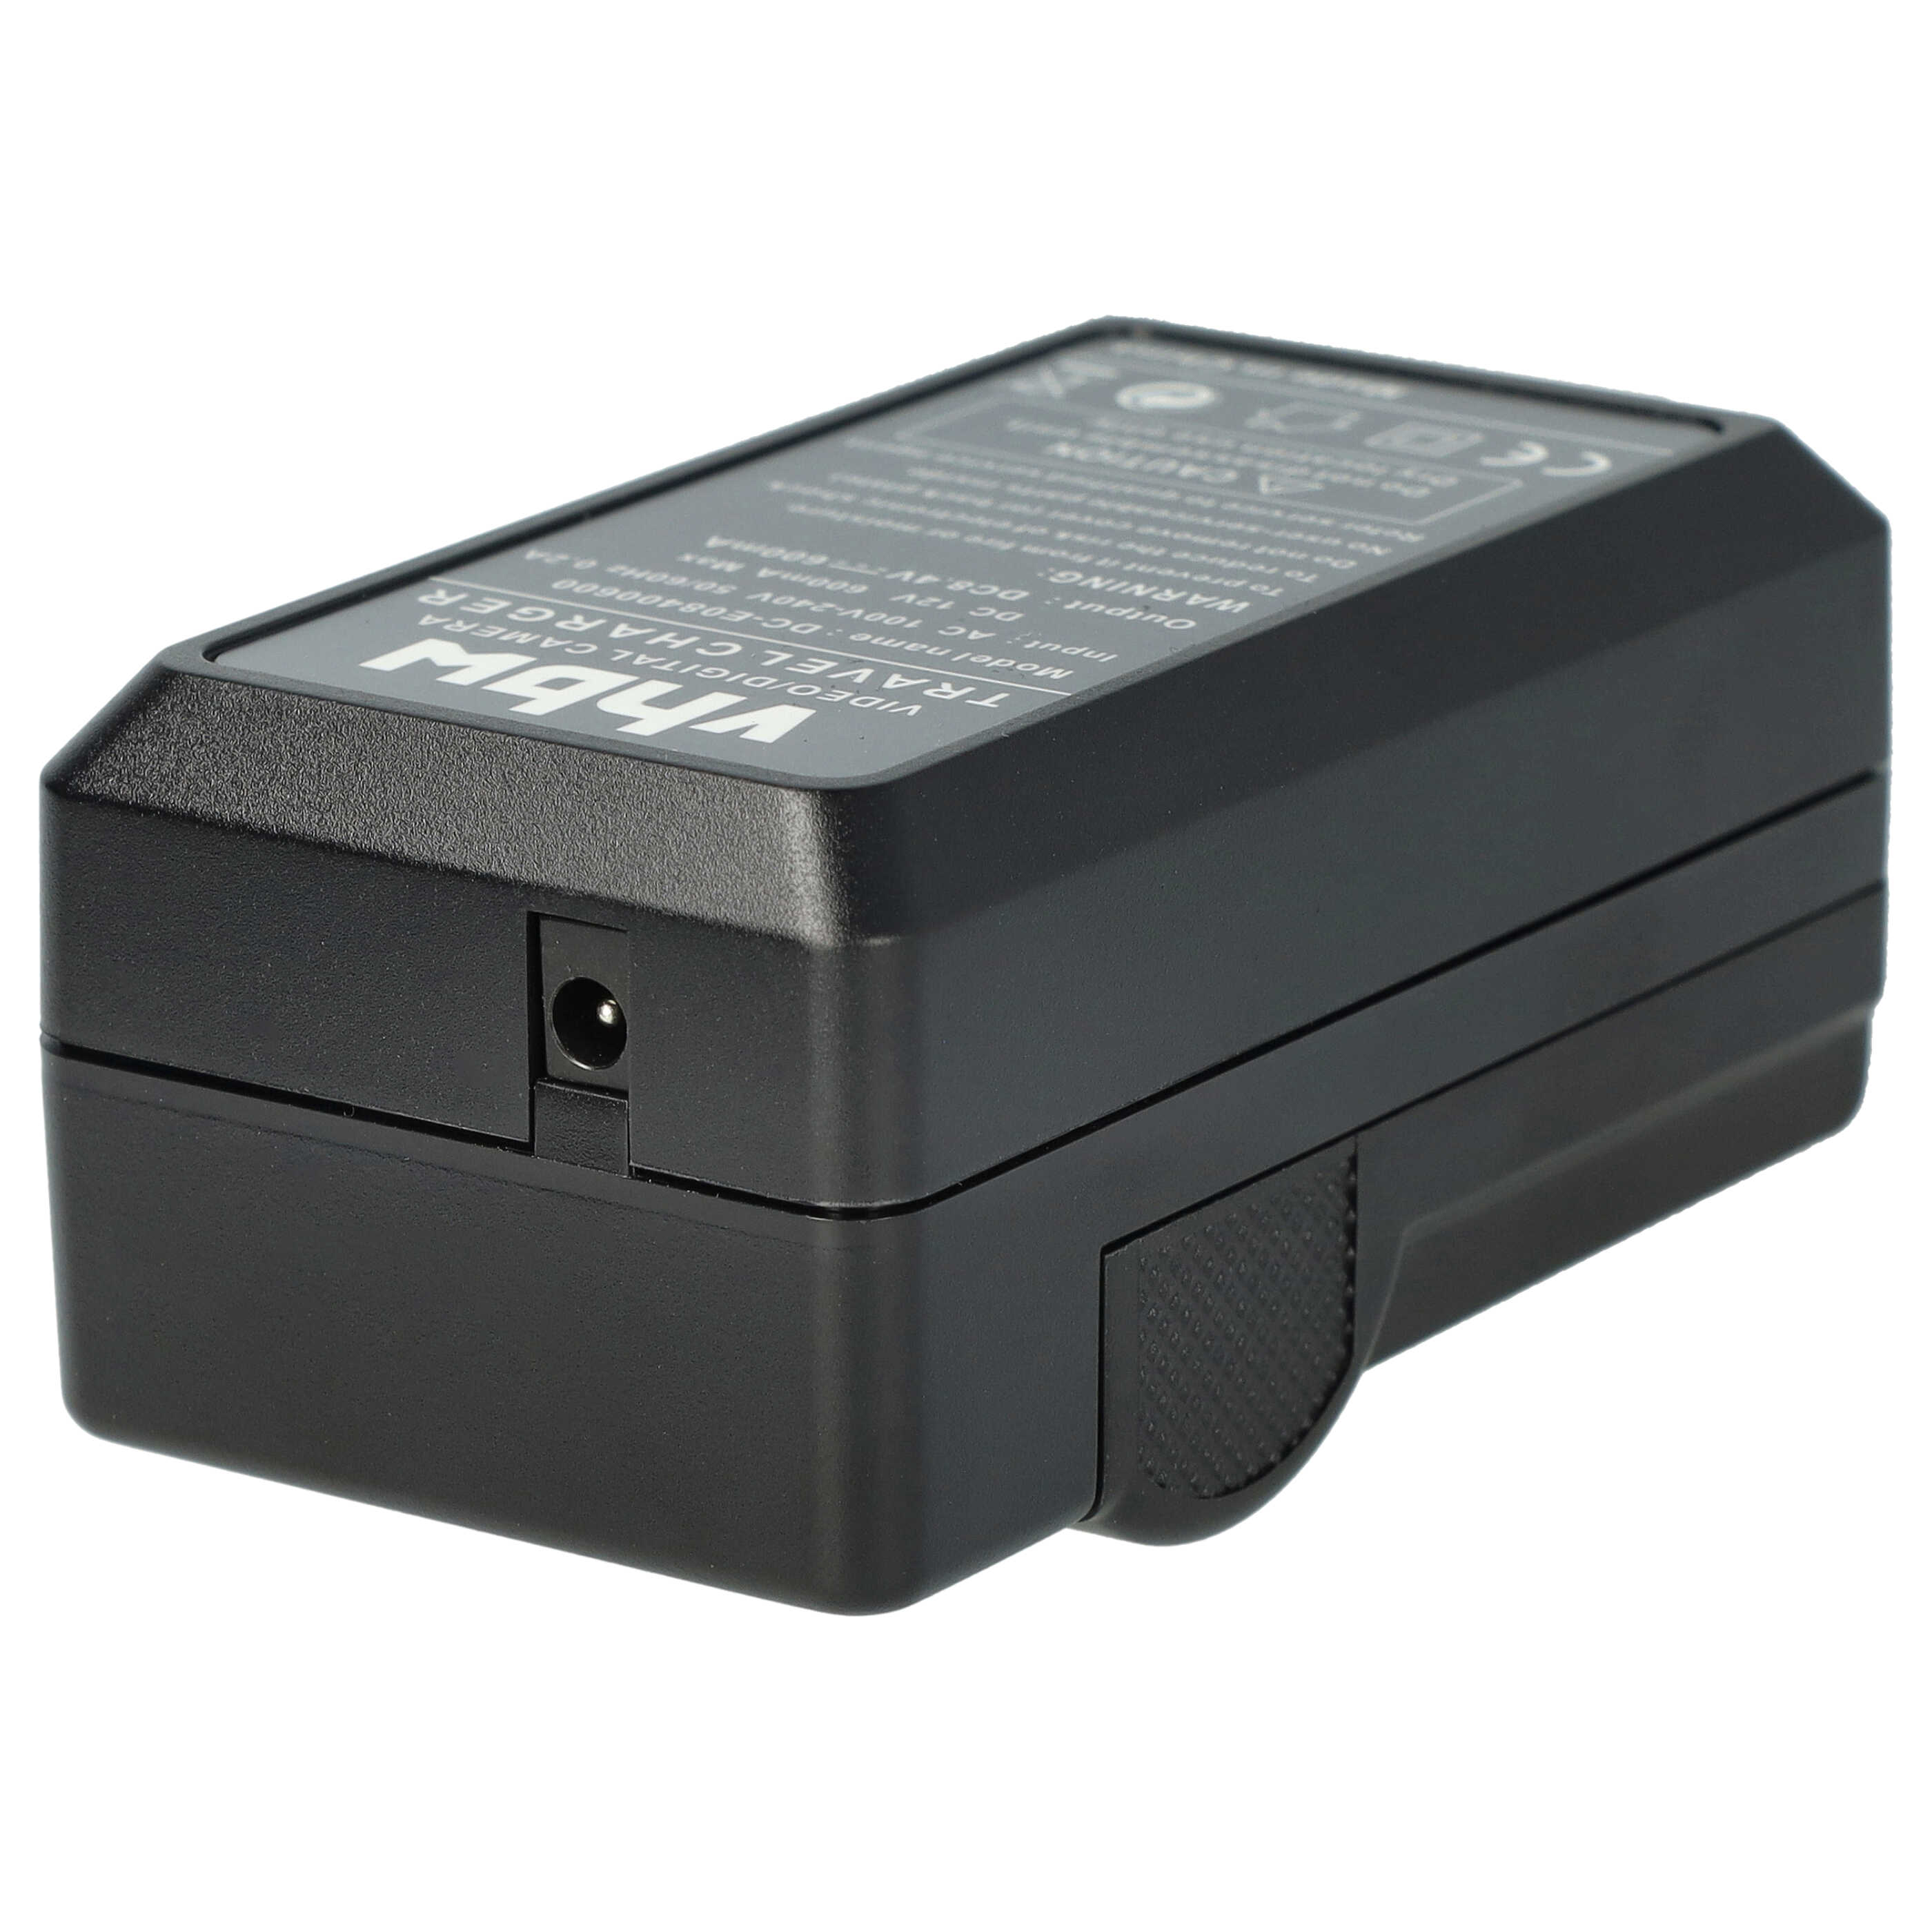 Caricabatterie + adattatore da auto per fotocamera Samsung - 0,6A 8,4V 88,5cm